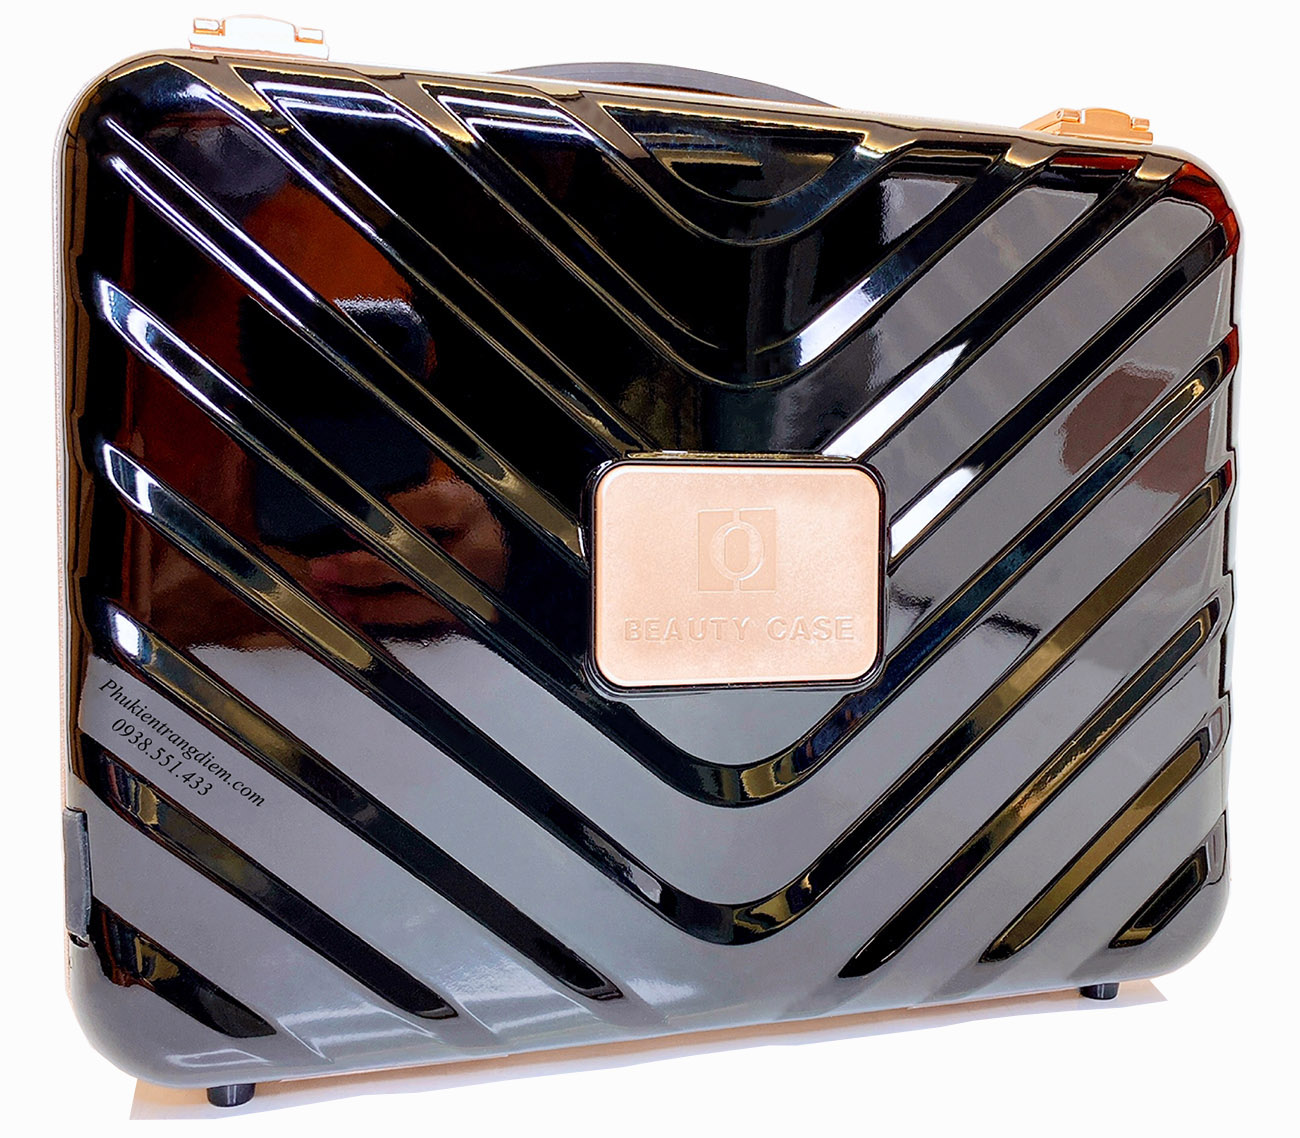 Cốp đựng mỹ phẩm cá nhân Beauty Case có gương + đèn LED vỏ nhựa bóng cao cấp  